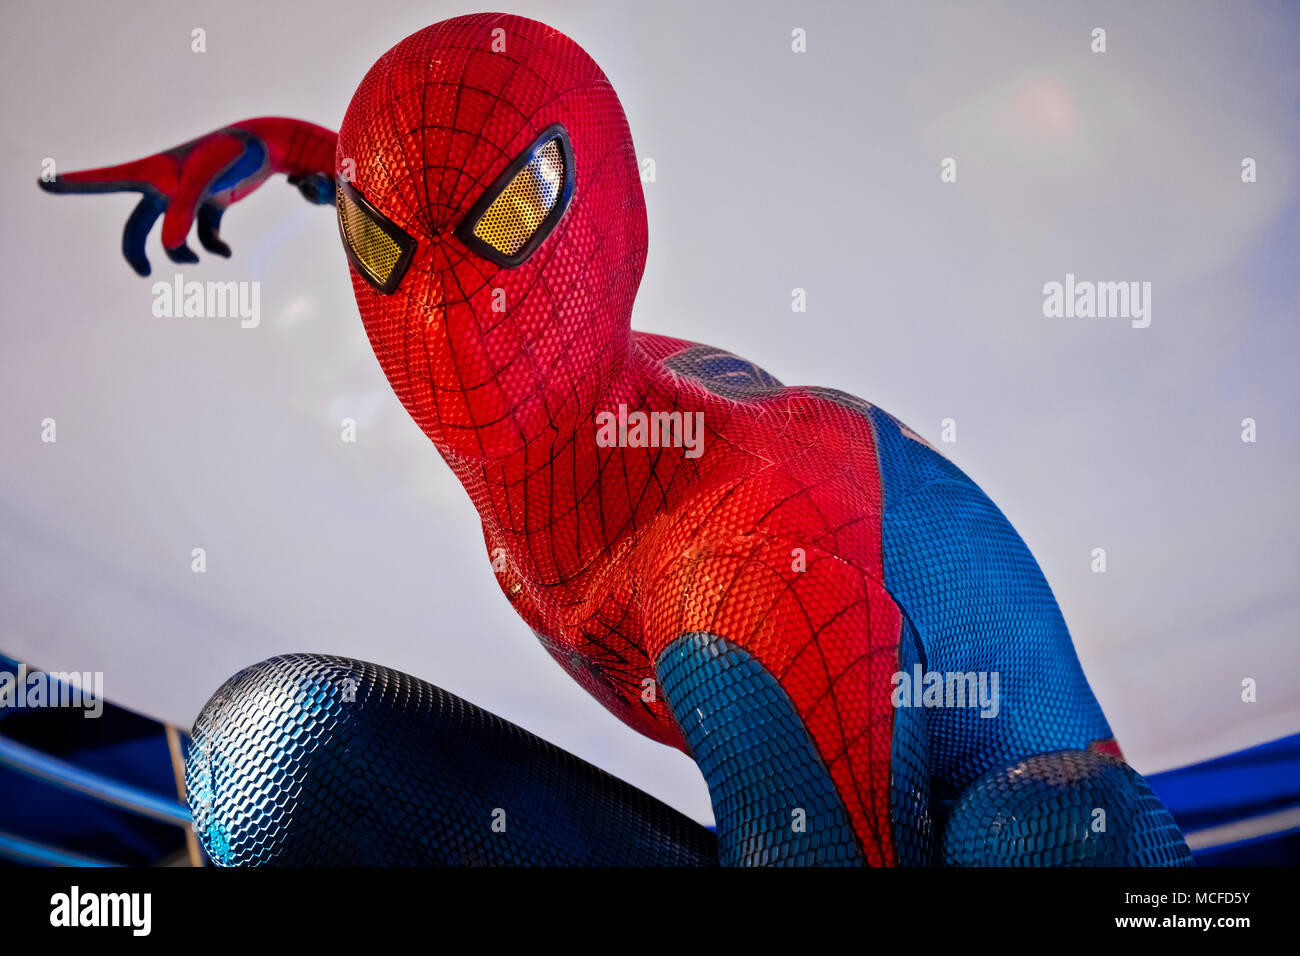 Abbildung der berühmten super Helden Spiderman im Shop. Spider-Man ist eine fiktive Superhelden in Amerikanischen Comics von Marvel Comics veröffentlicht. Stockfoto